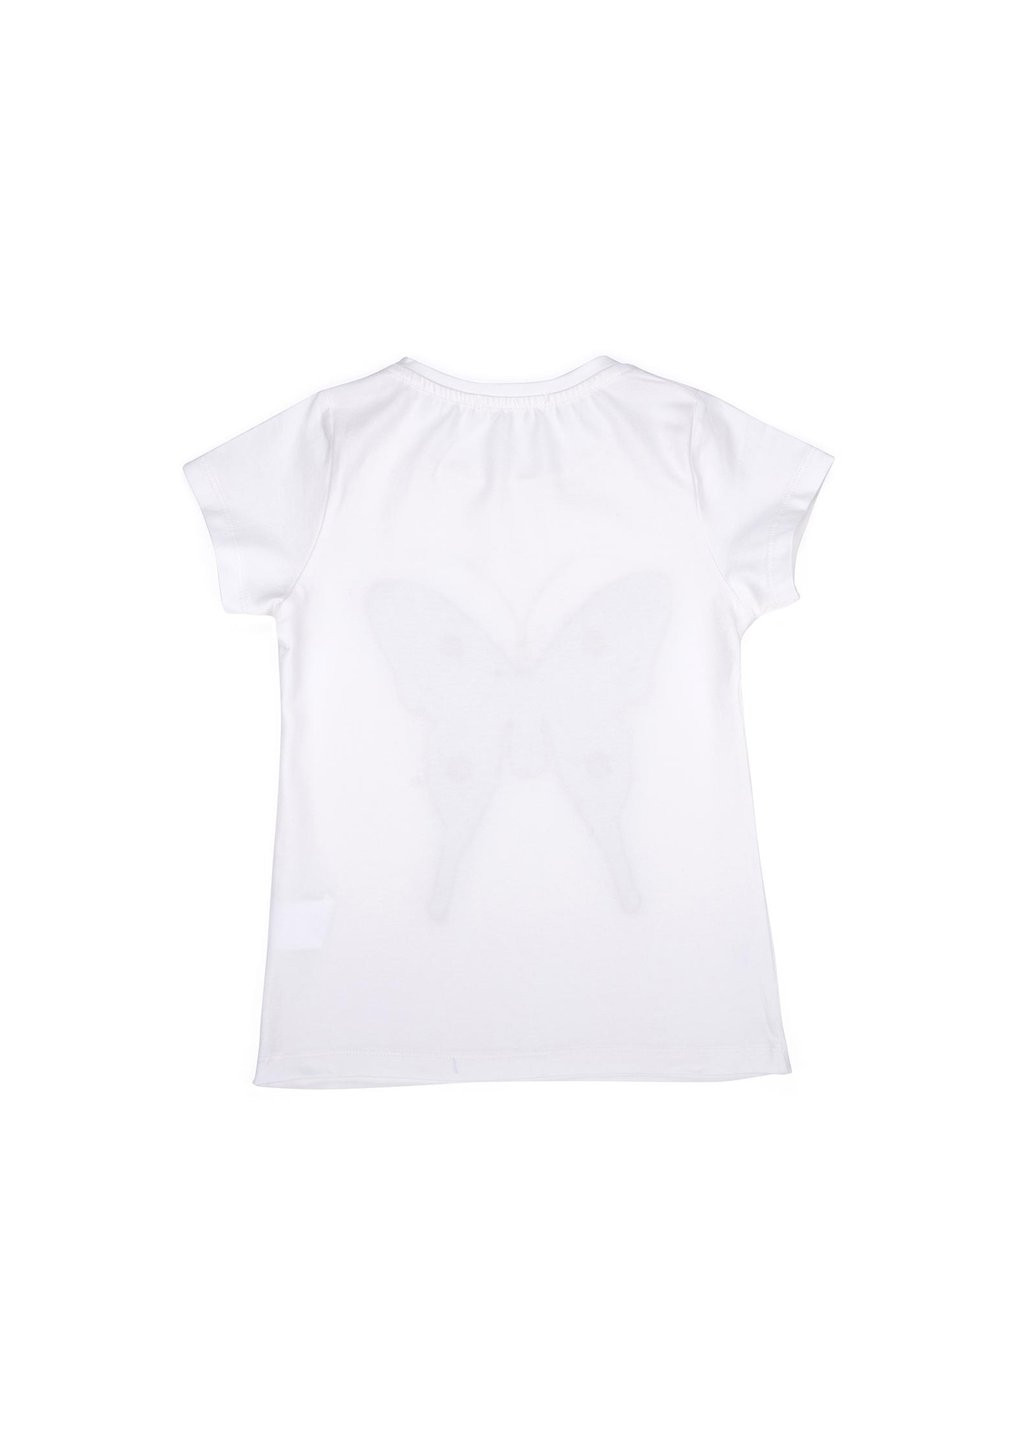 Комбинированная футболка детская с бабочкой из пайеток (11055-128g-cream) Breeze